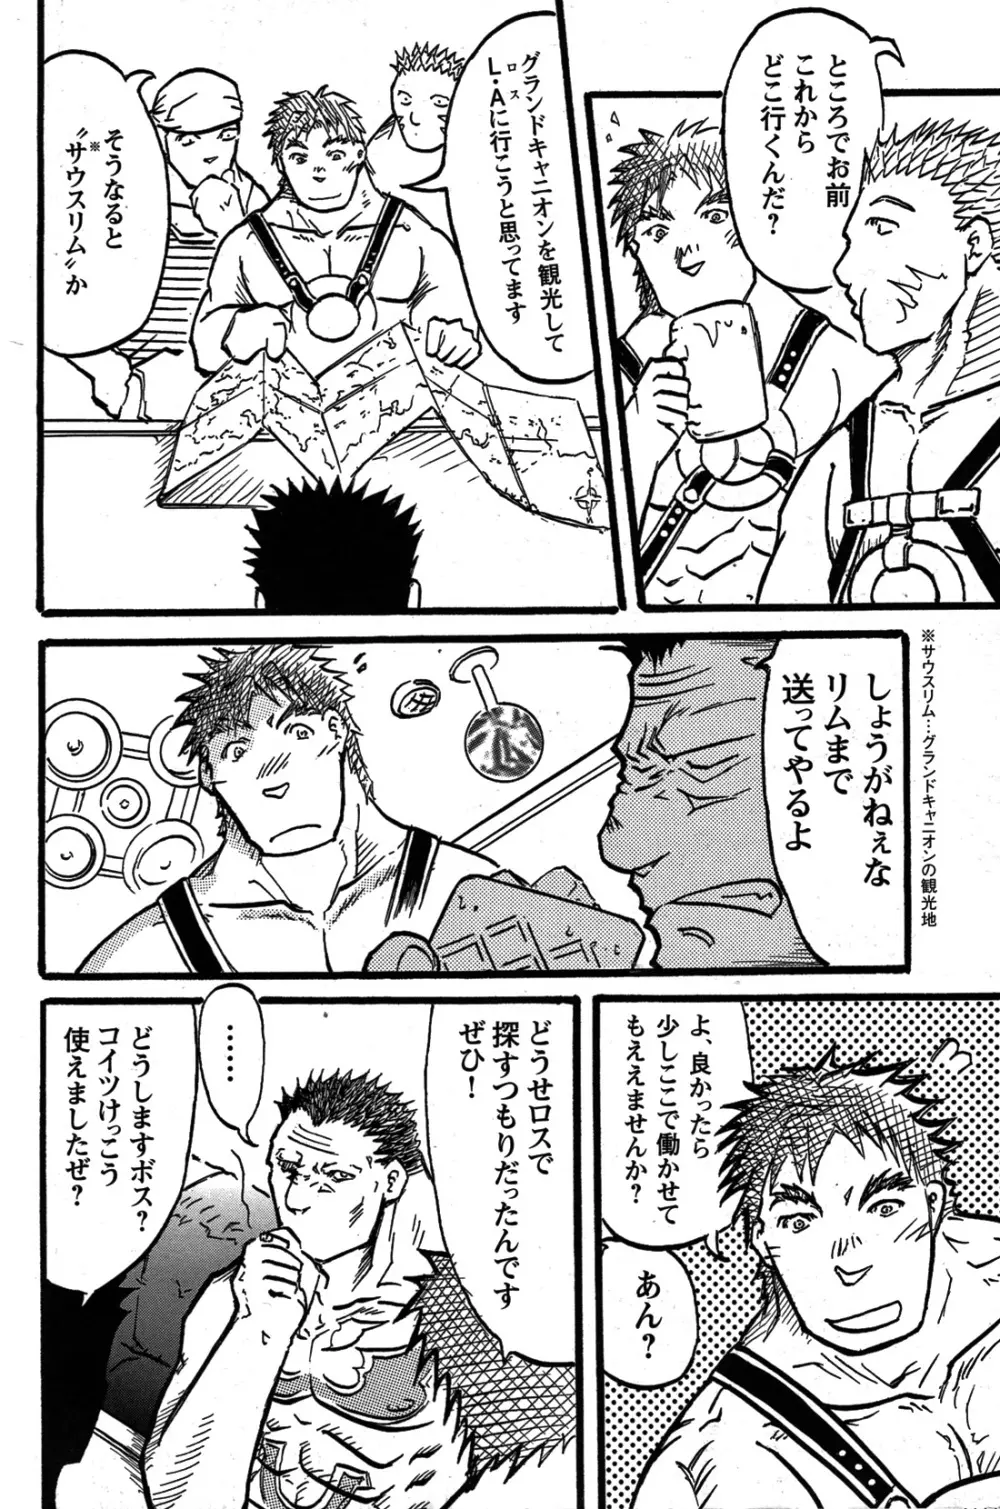 Comic G-men Gaho No.07 151ページ